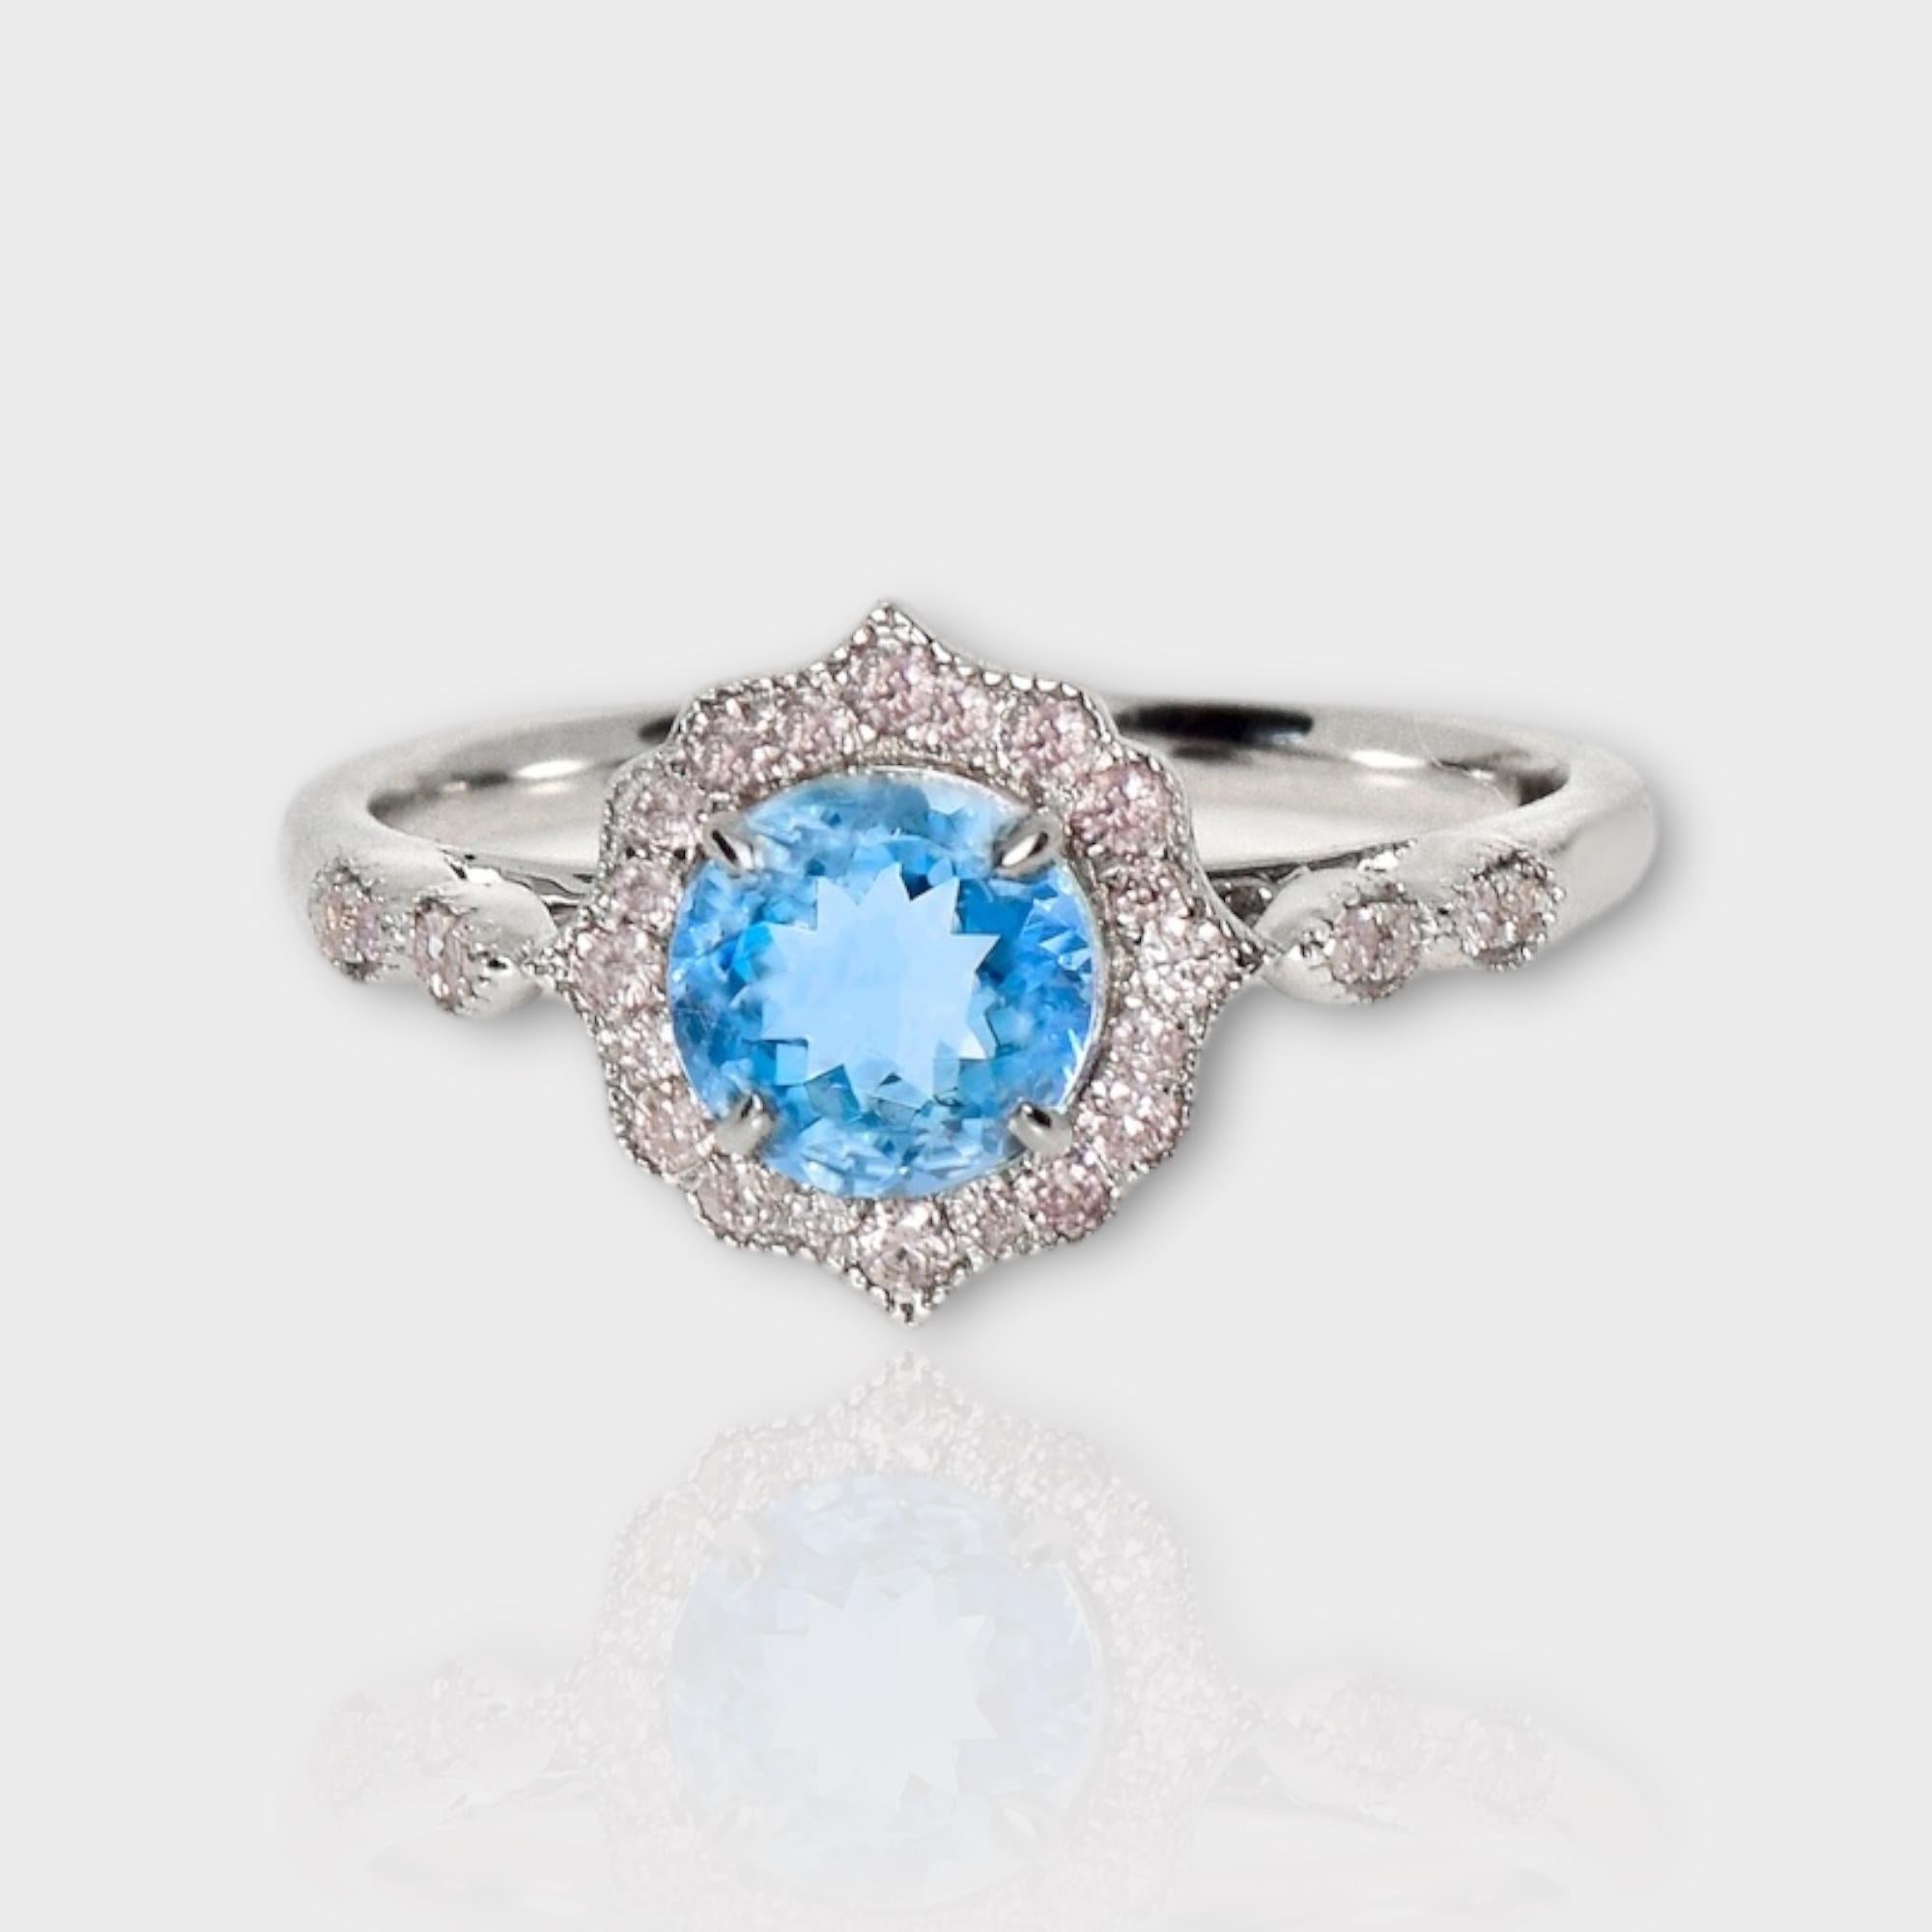 *IGI 14K 0.88 Ct Aquamarine&Pink Diamonds Antique Art Deco Style Engagement Ring* (bague de fiançailles)

Aigue-marine bleue naturelle pesant 0,88 ct sertie sur un anneau en or blanc 14K avec des diamants roses ronds de taille brillant pesant 0,16